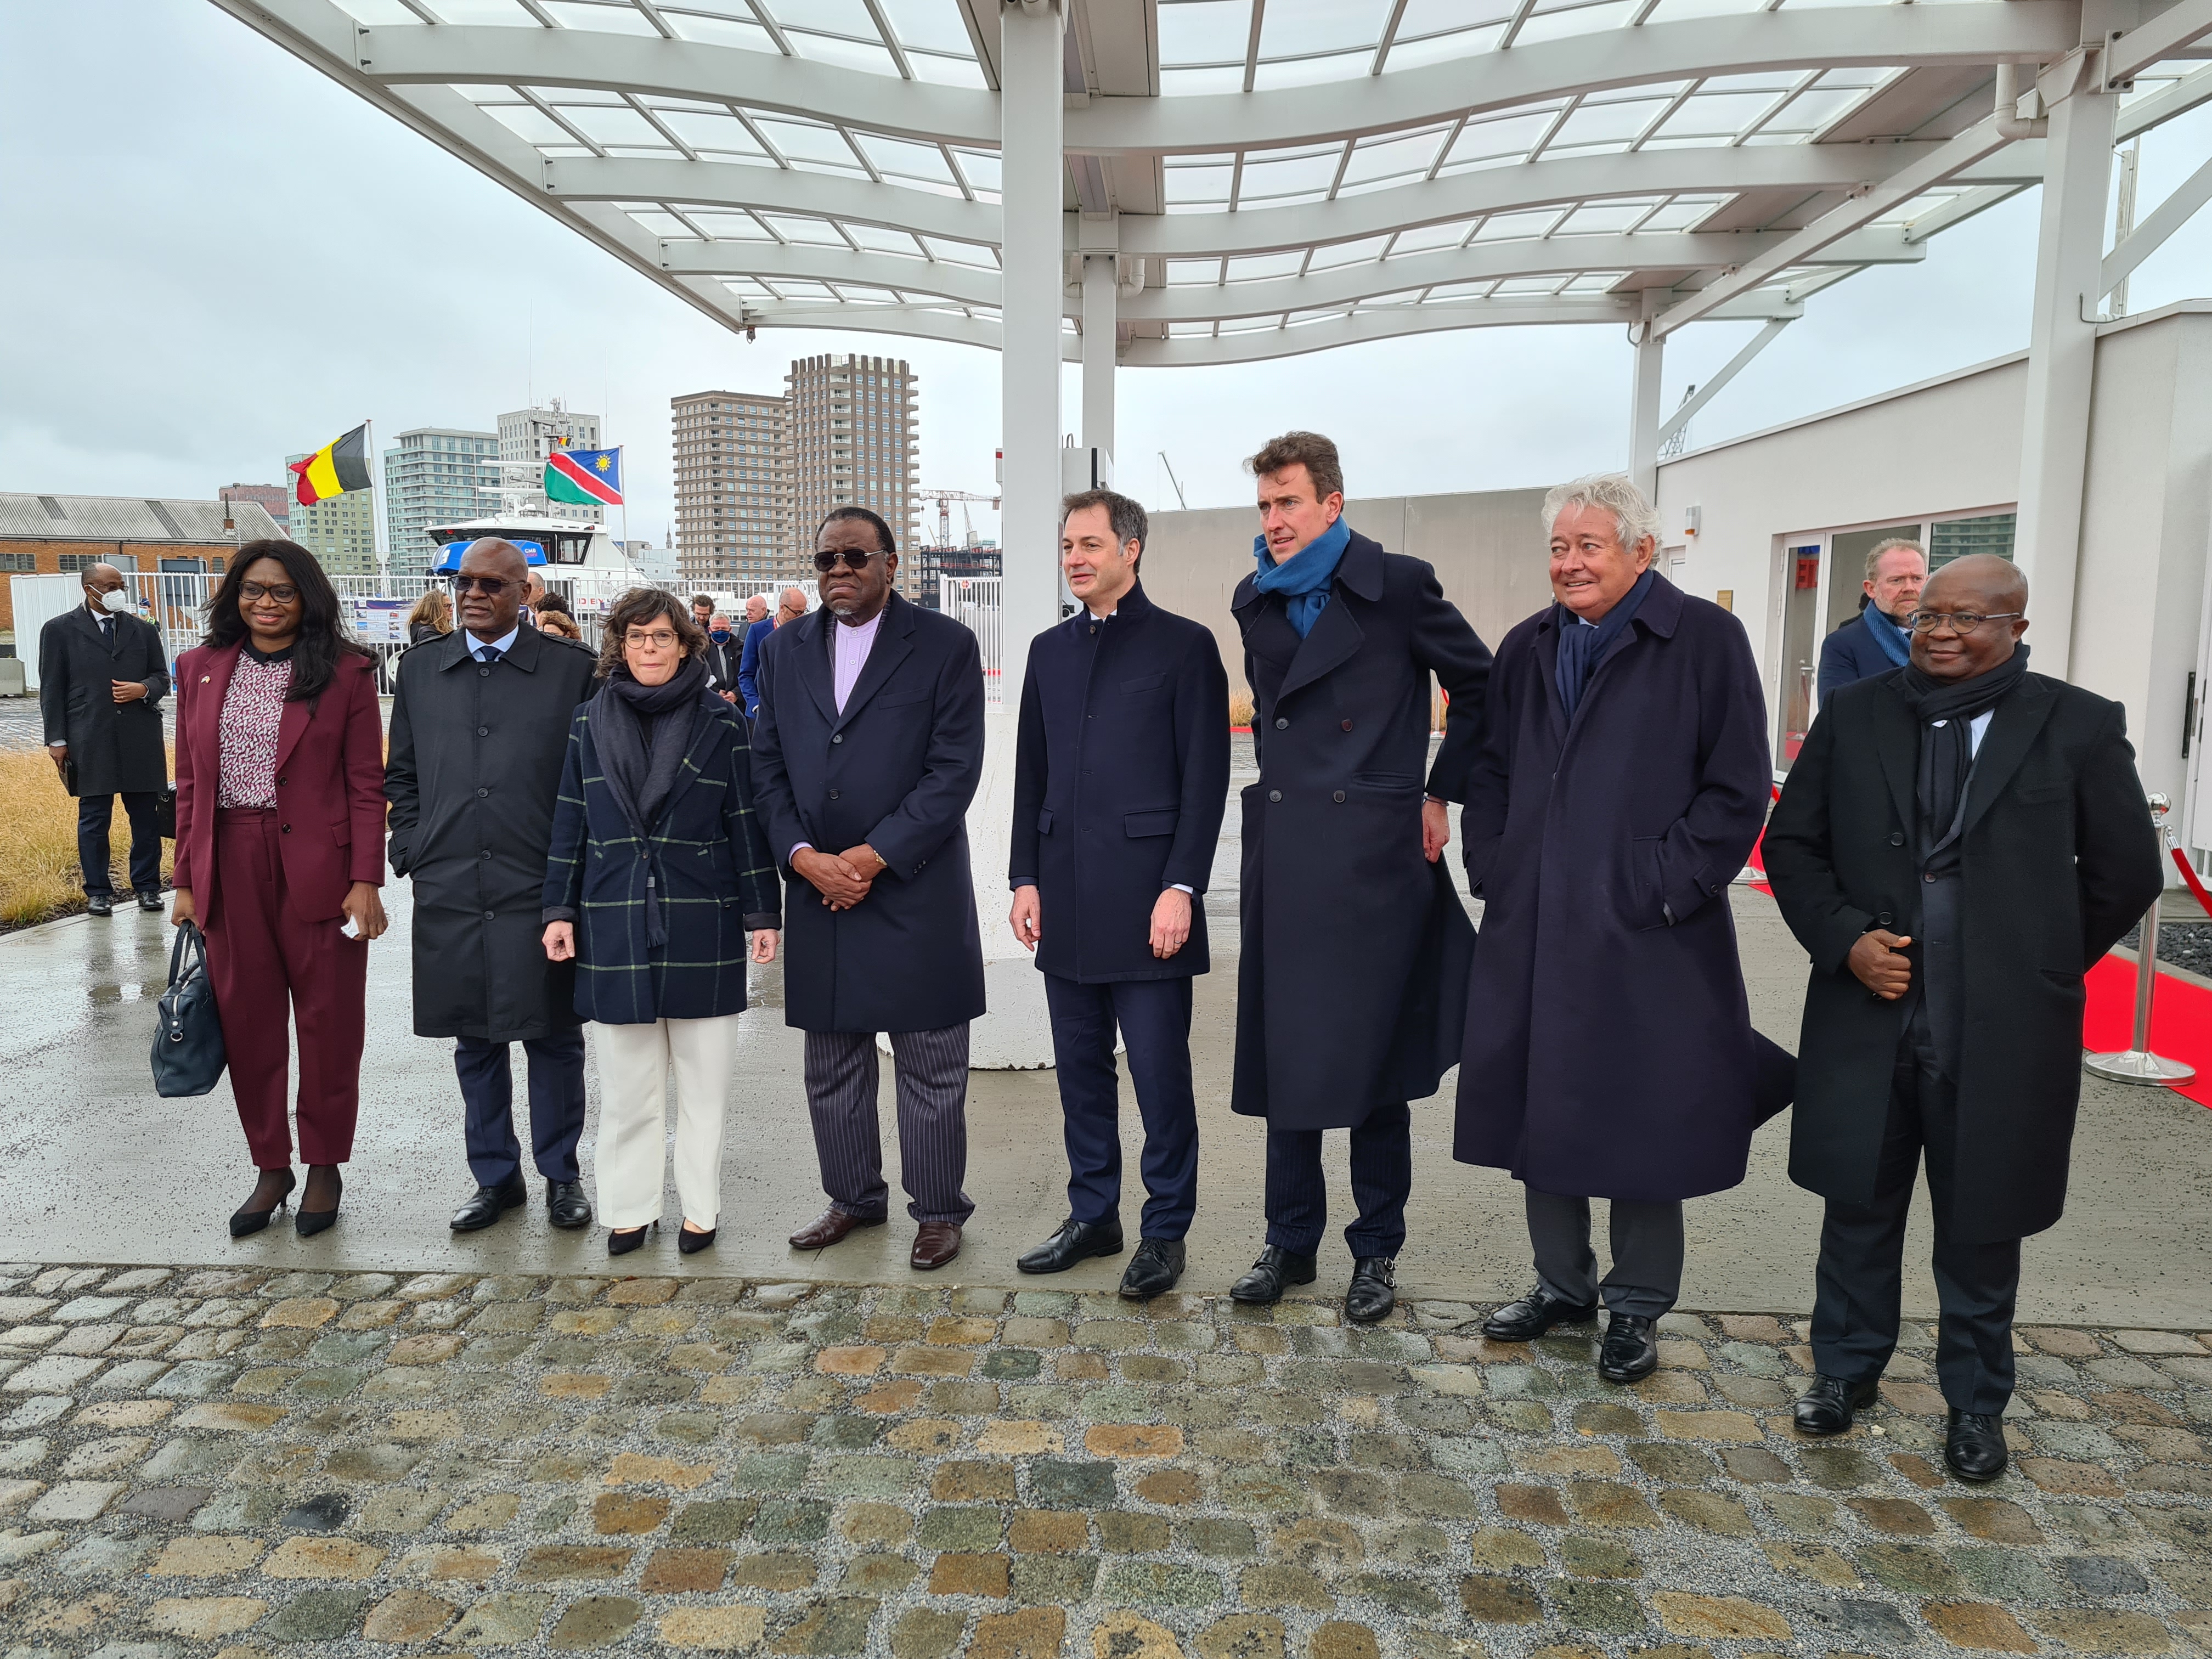 20220216 Antwerpen CMB Namibische president op bezoek